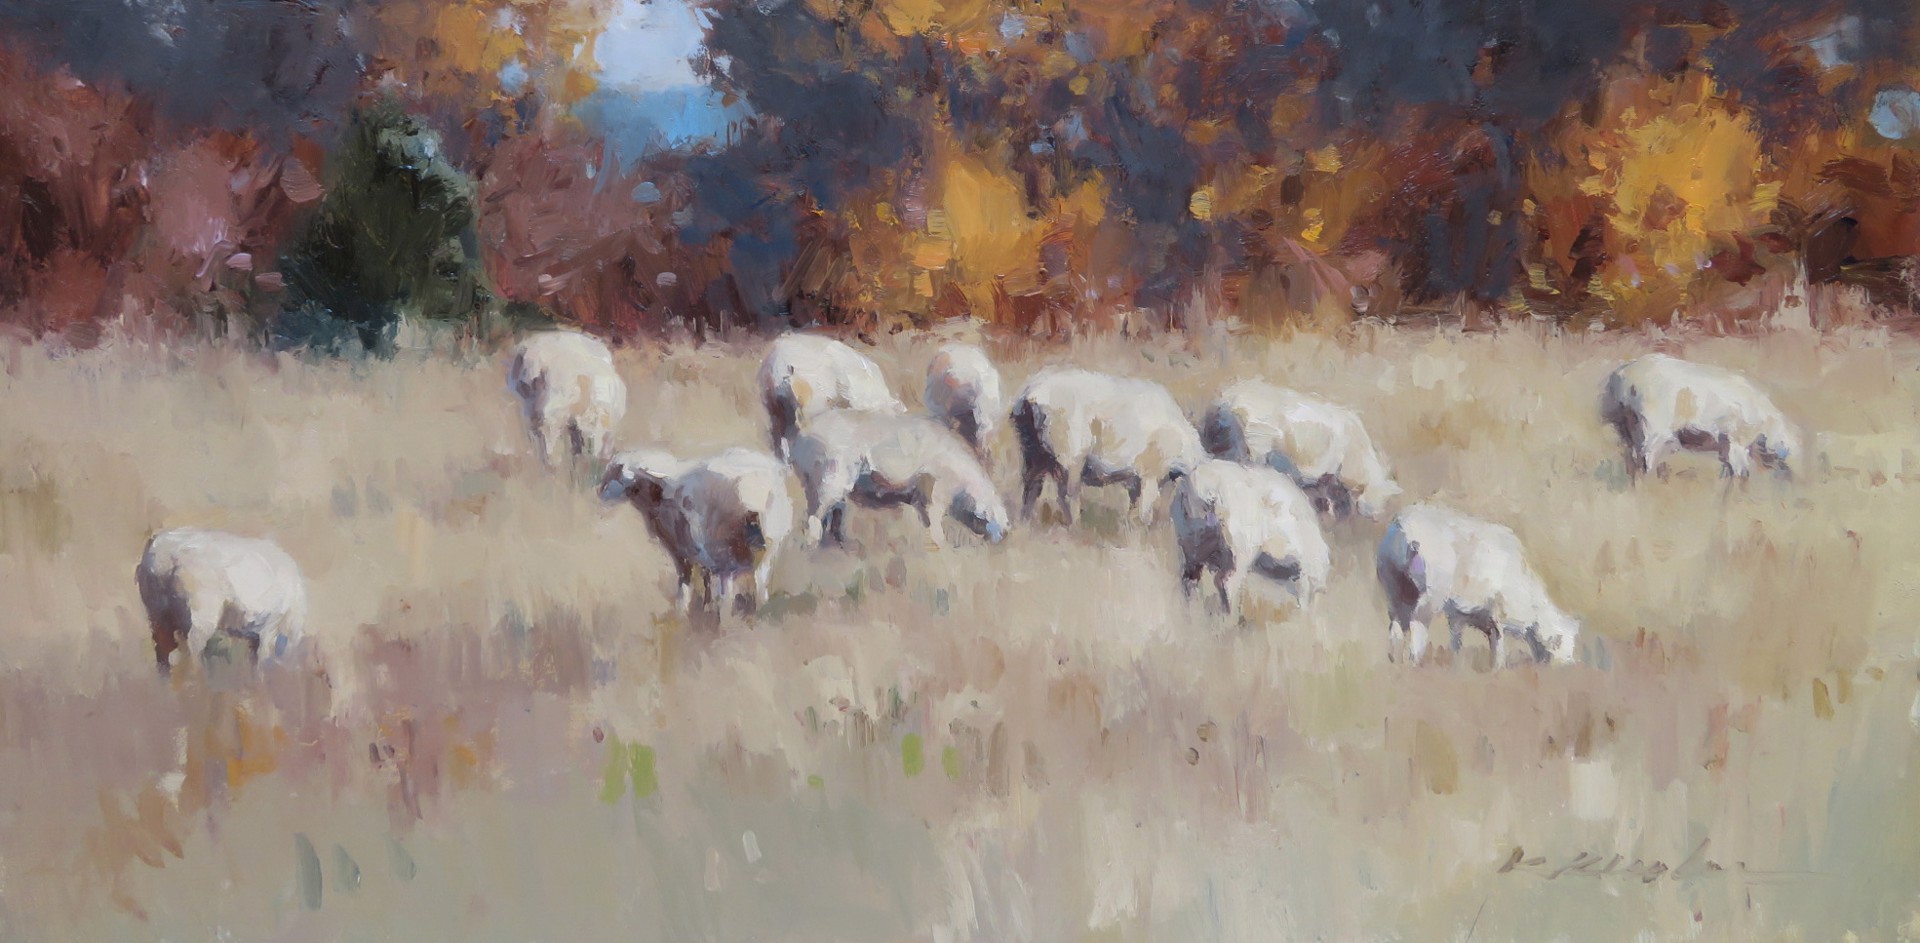 The Flock by Kate Kiesler